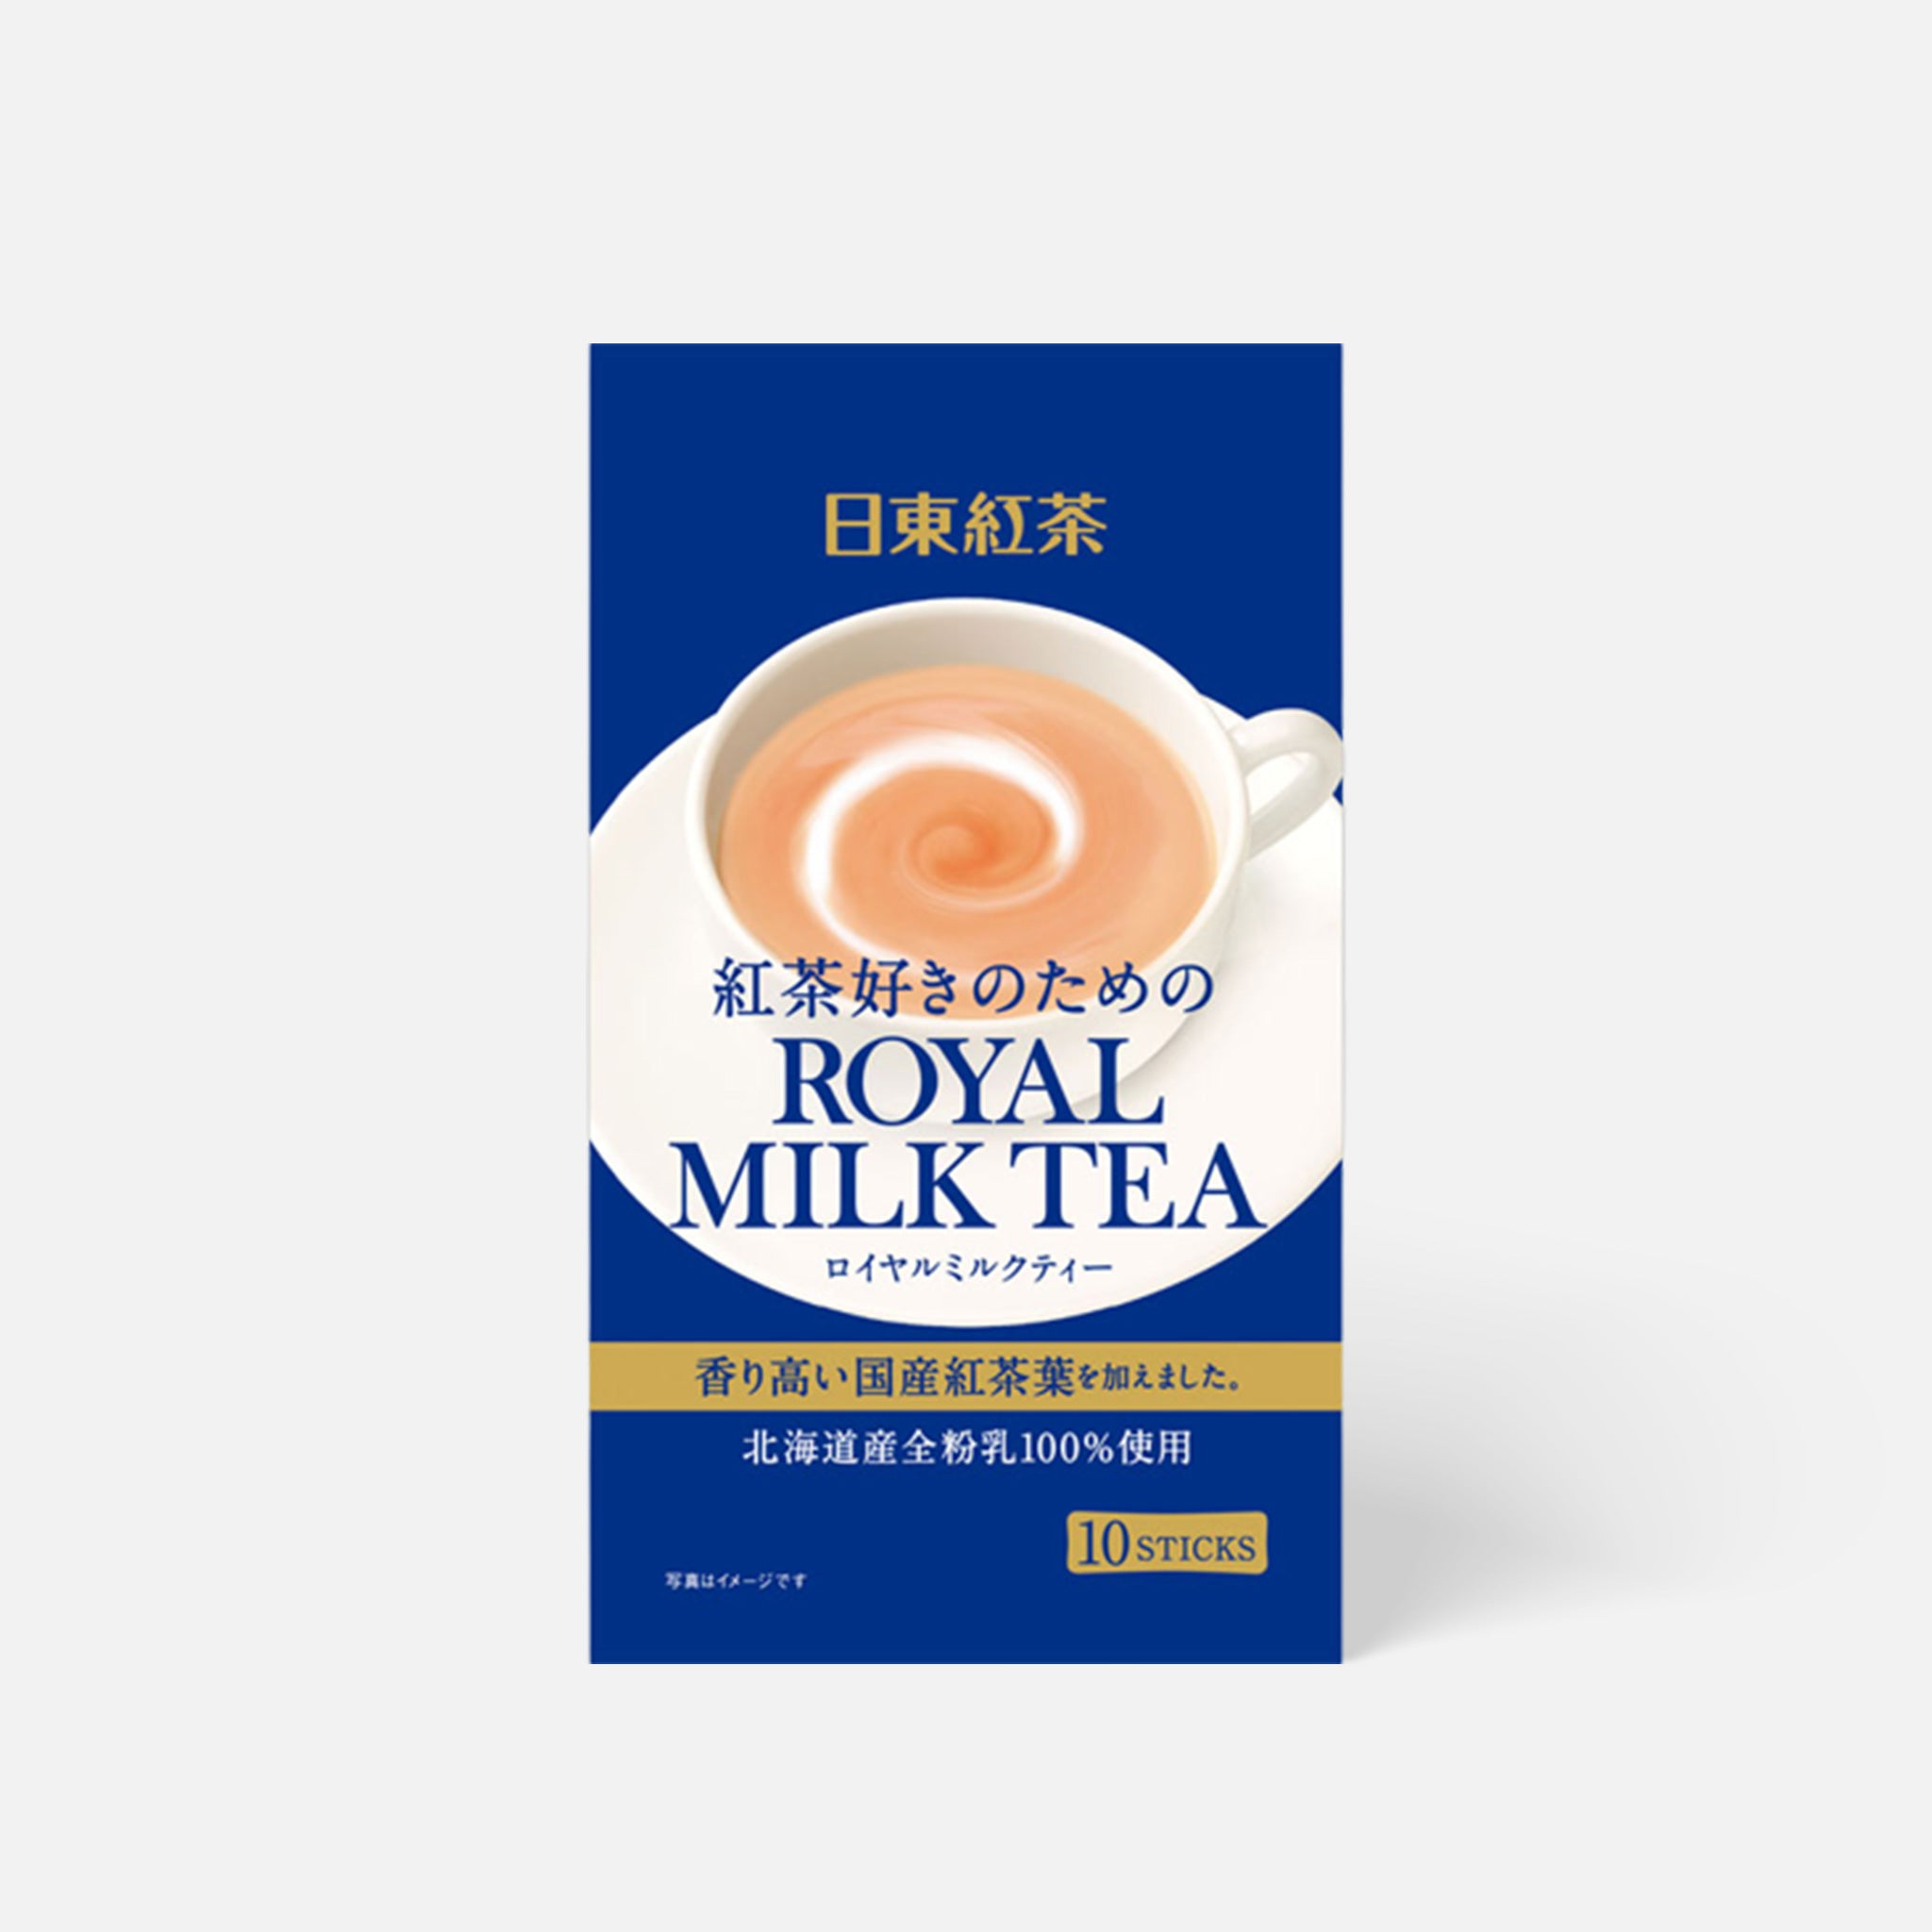 Nitto Tea-Royal Milk Tea